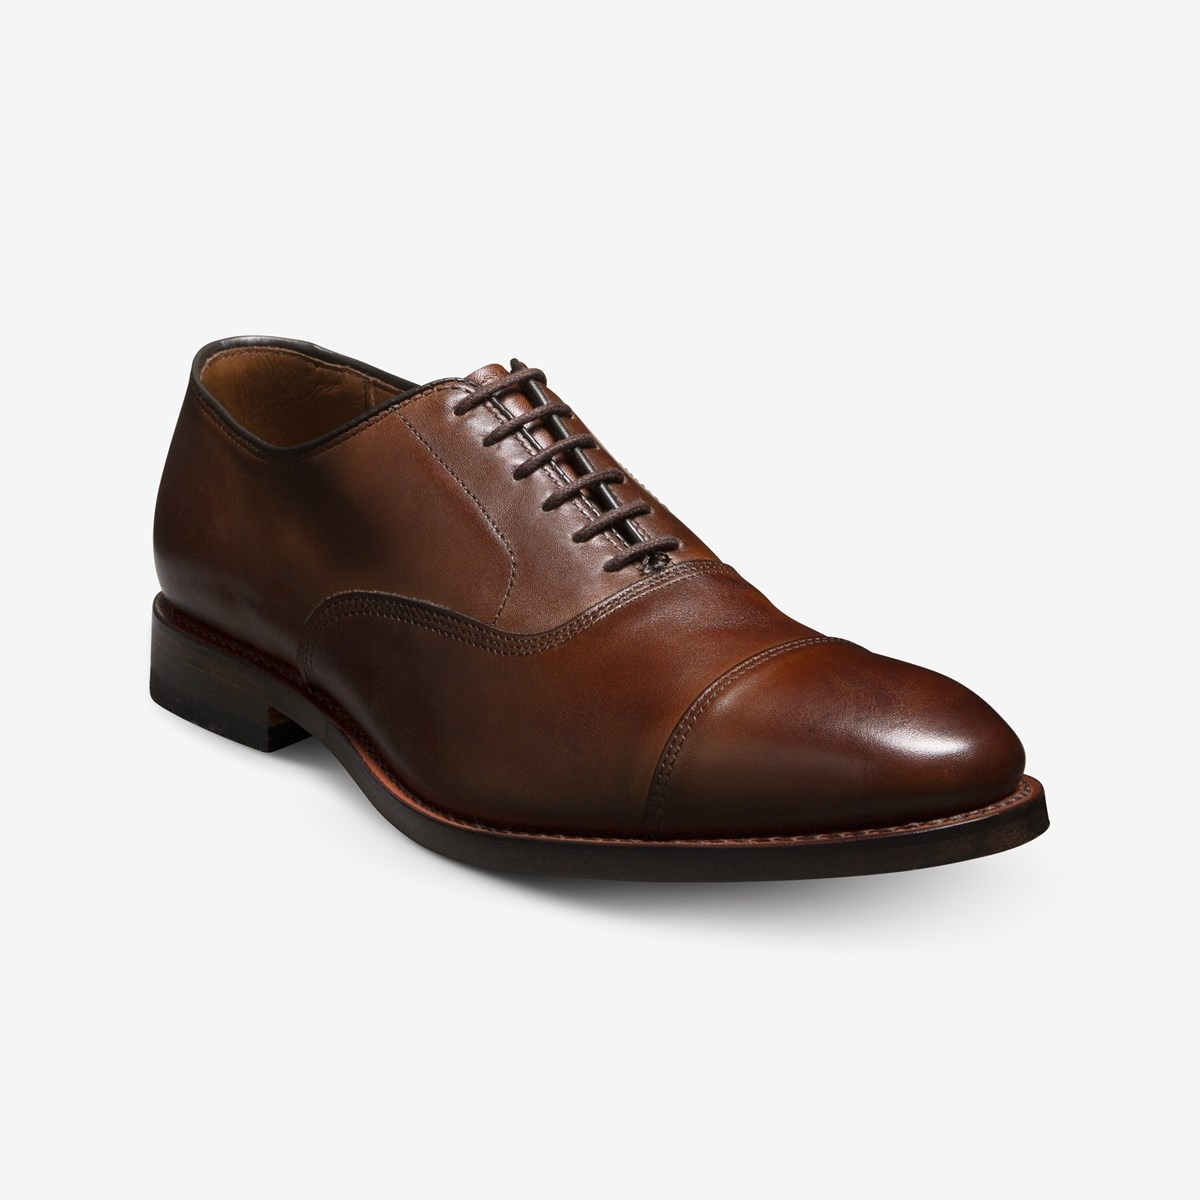 Park Avenue Cap-toe Oxford Shoe | Men's Dress Allen Edmonds